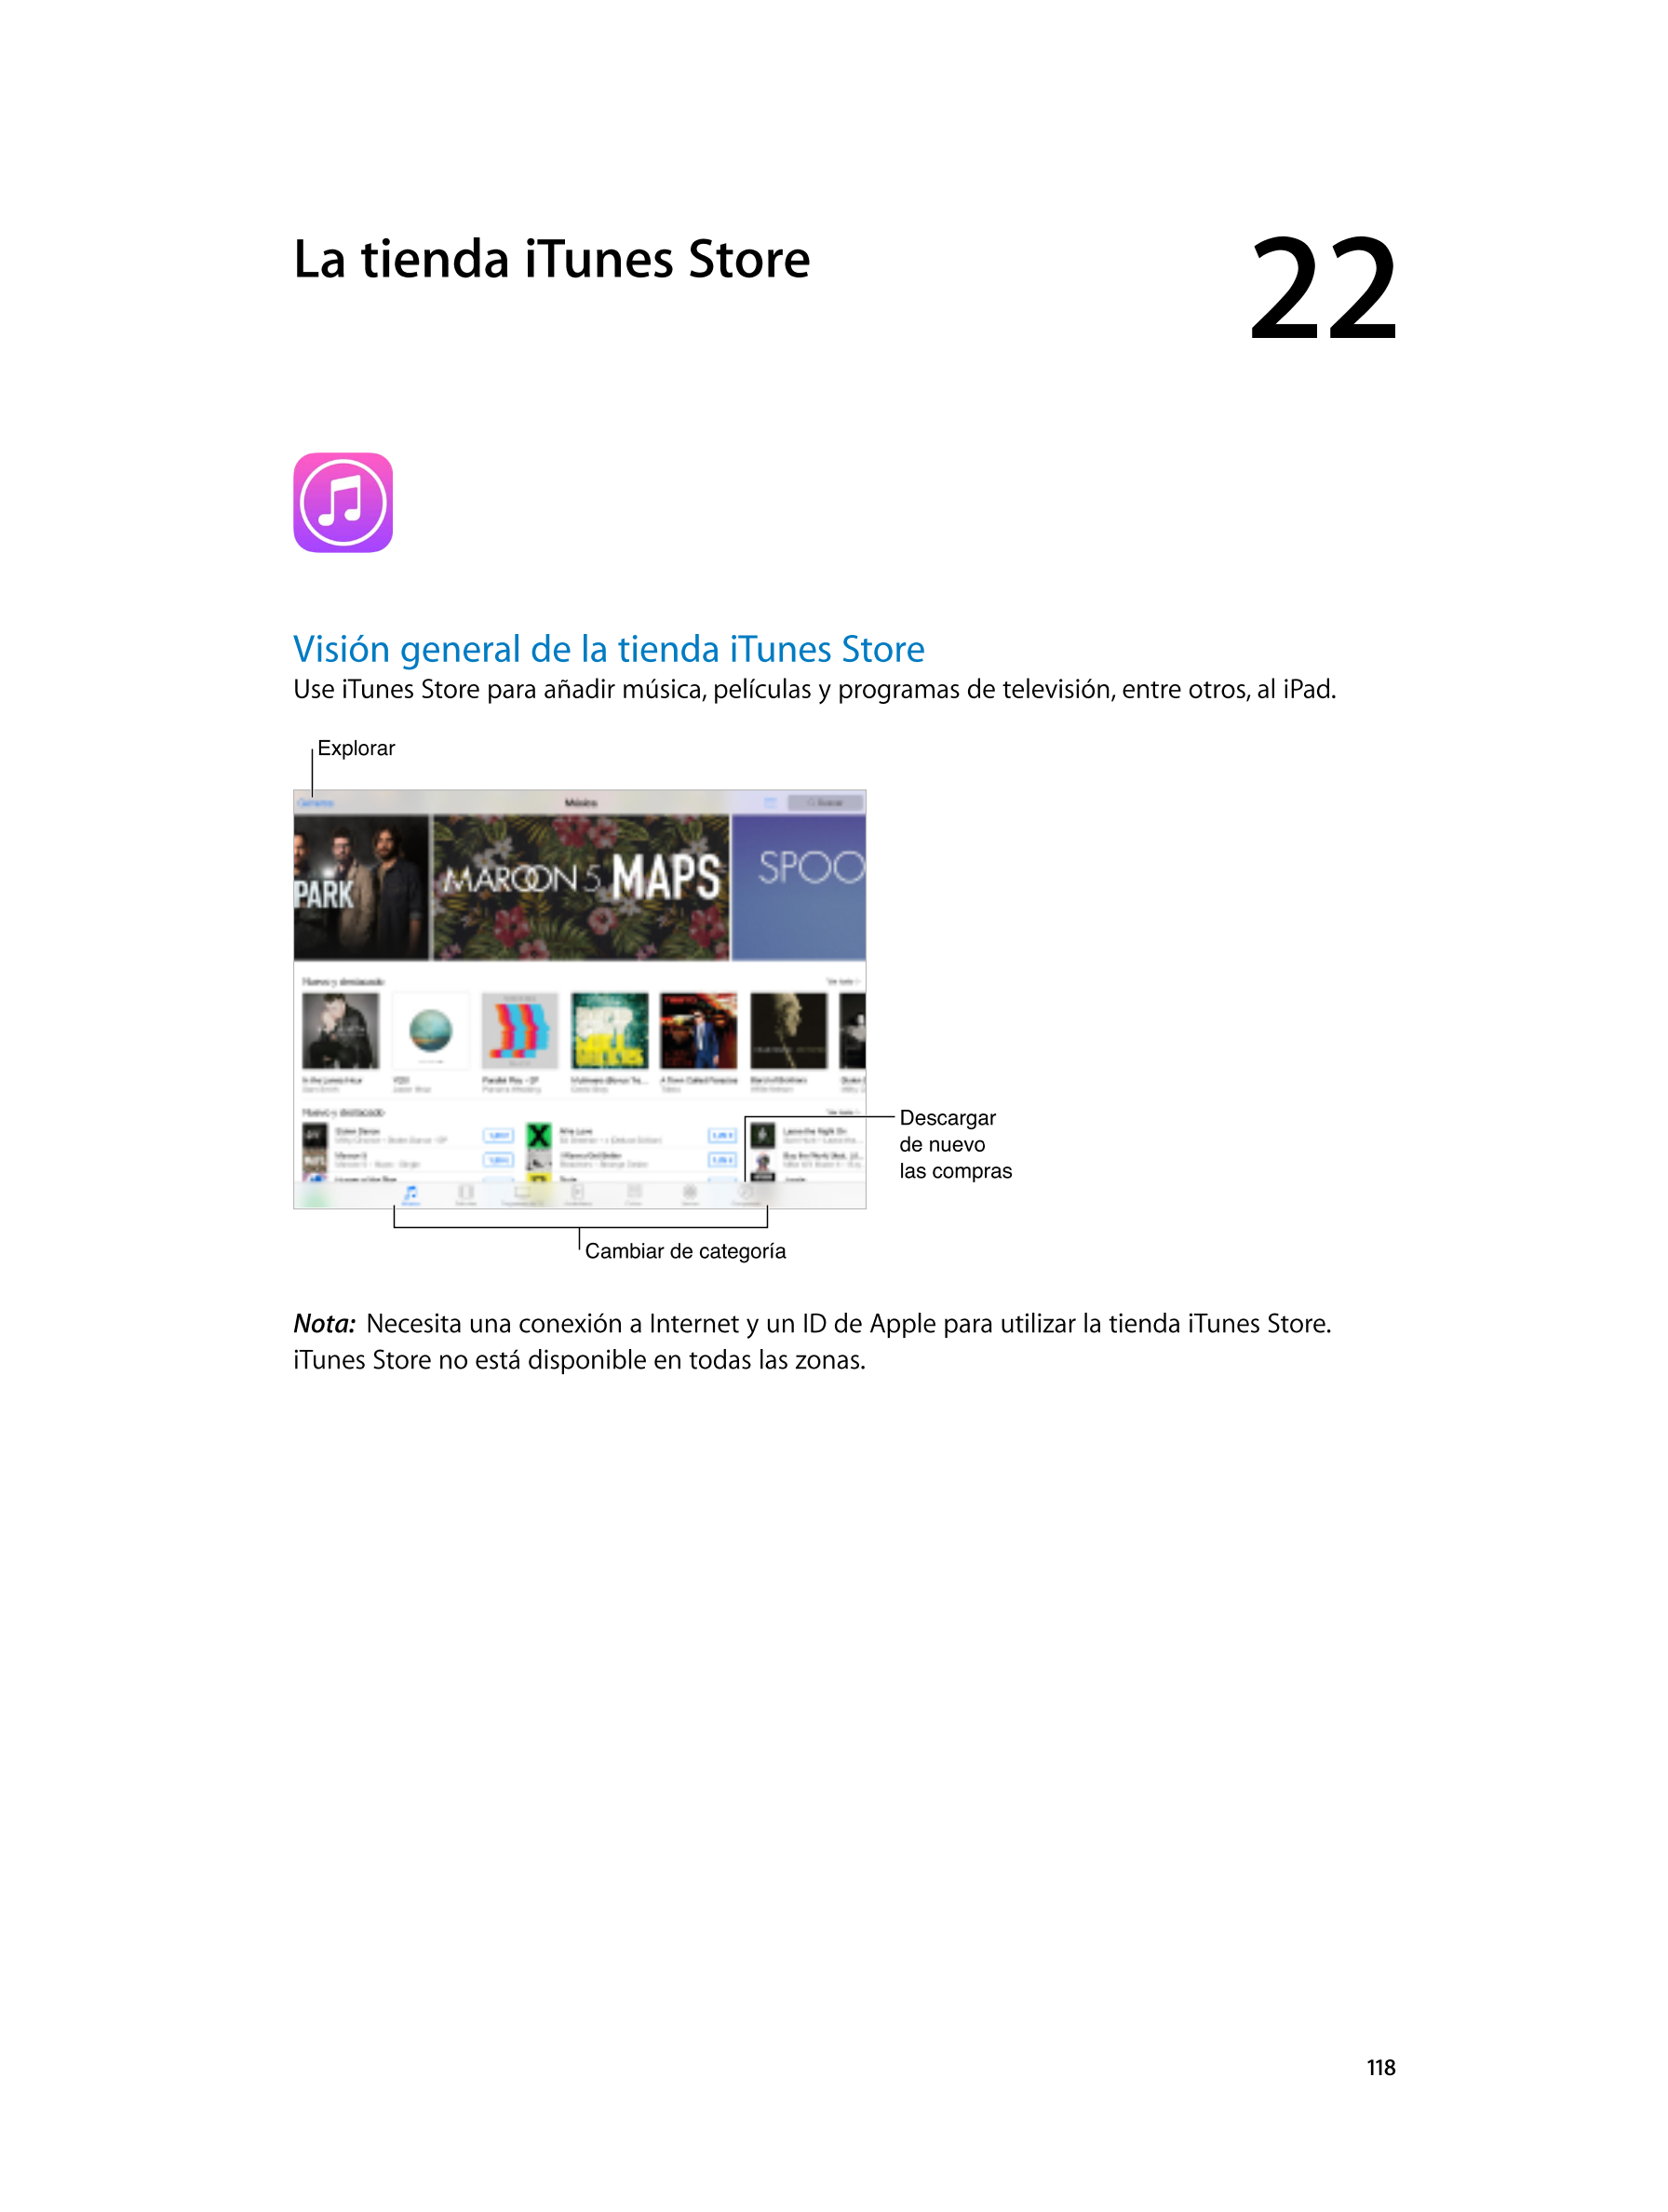  La tienda iTunes  Store 22  
Visión general de la tienda iTunes  Store
Use iTunes Store para añadir música, películas y program